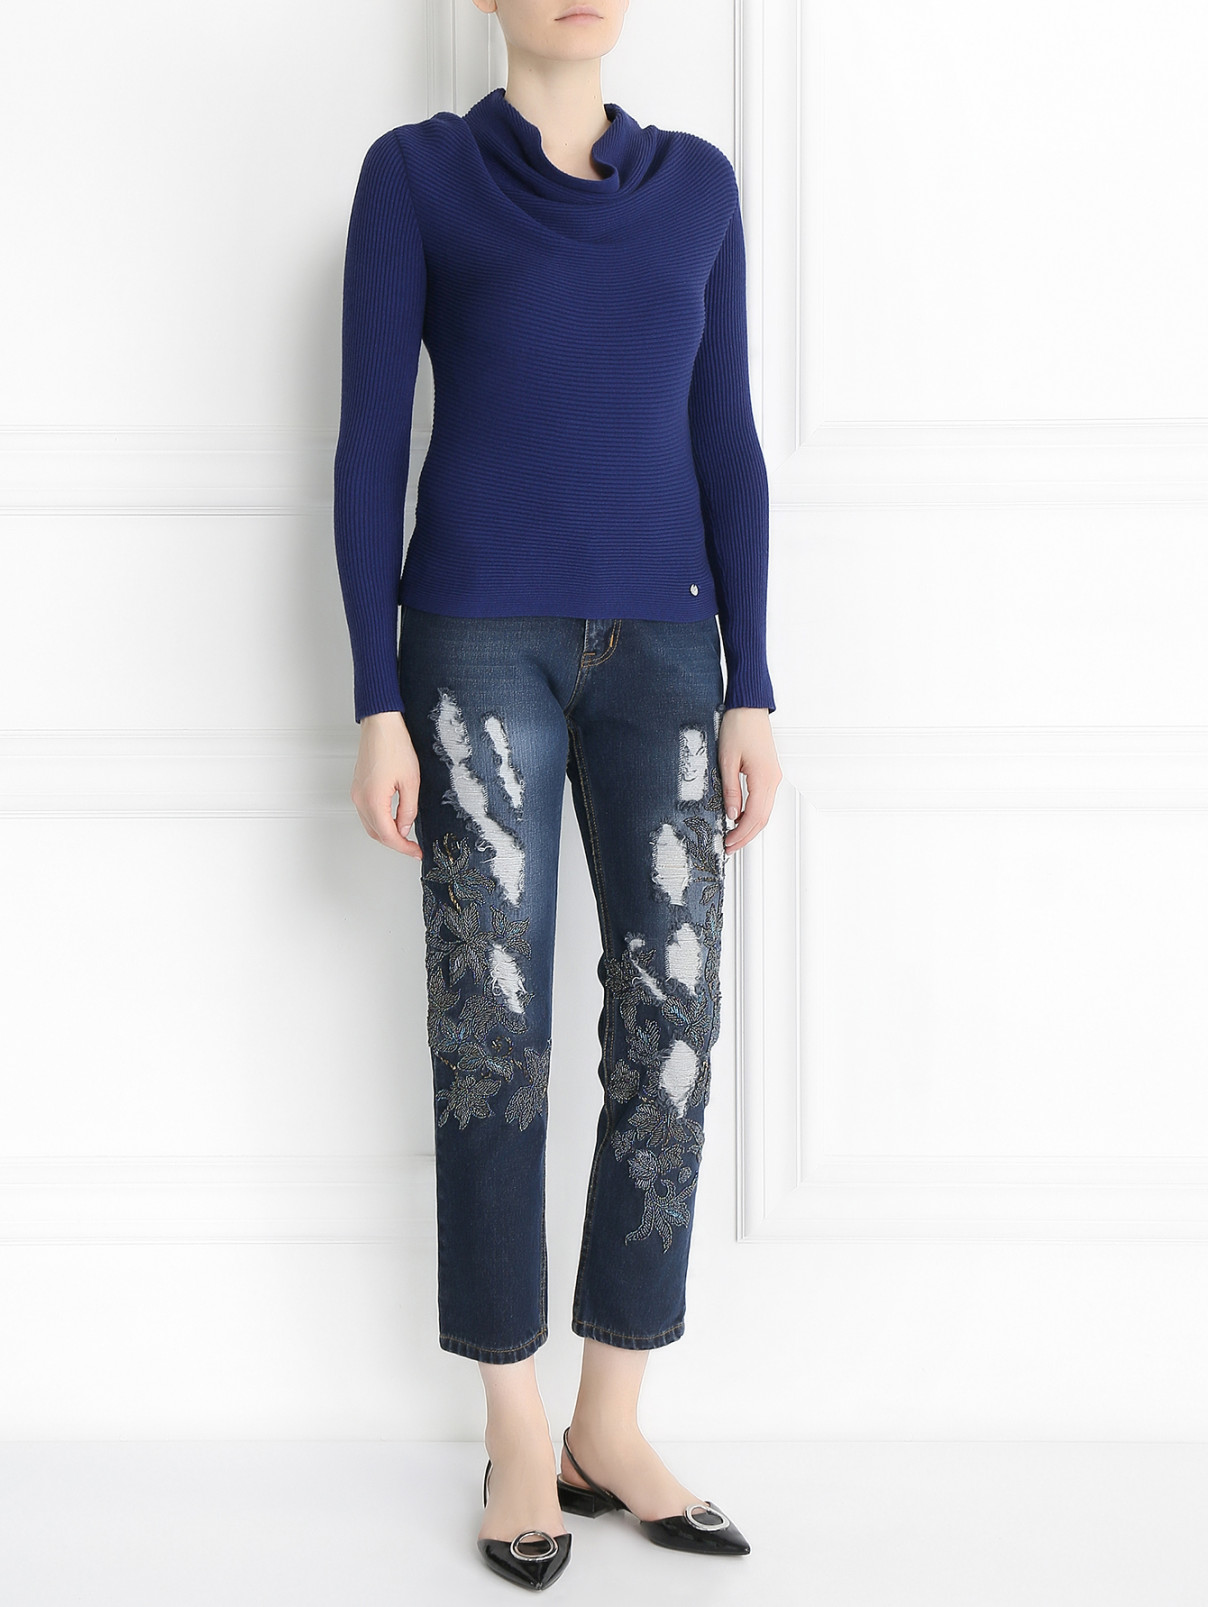 Джемпер из шерсти и вискозы Armani Jeans  –  Модель Общий вид  – Цвет:  Синий